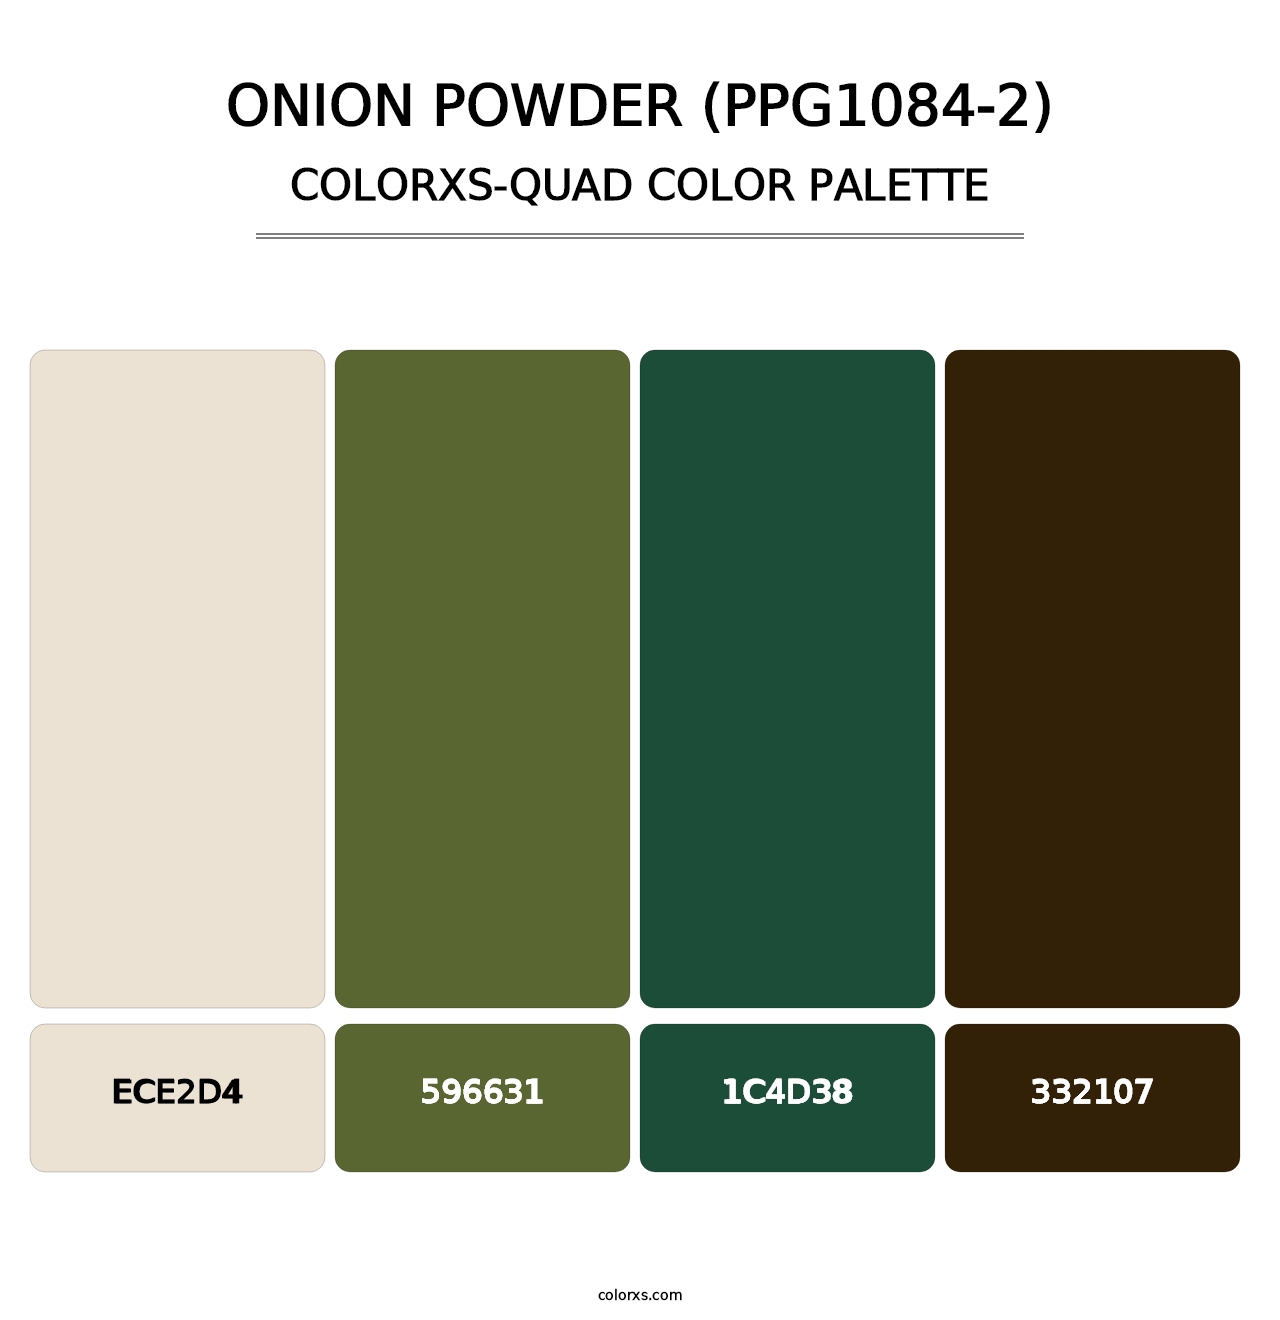 Onion Powder (PPG1084-2) - Colorxs Quad Palette